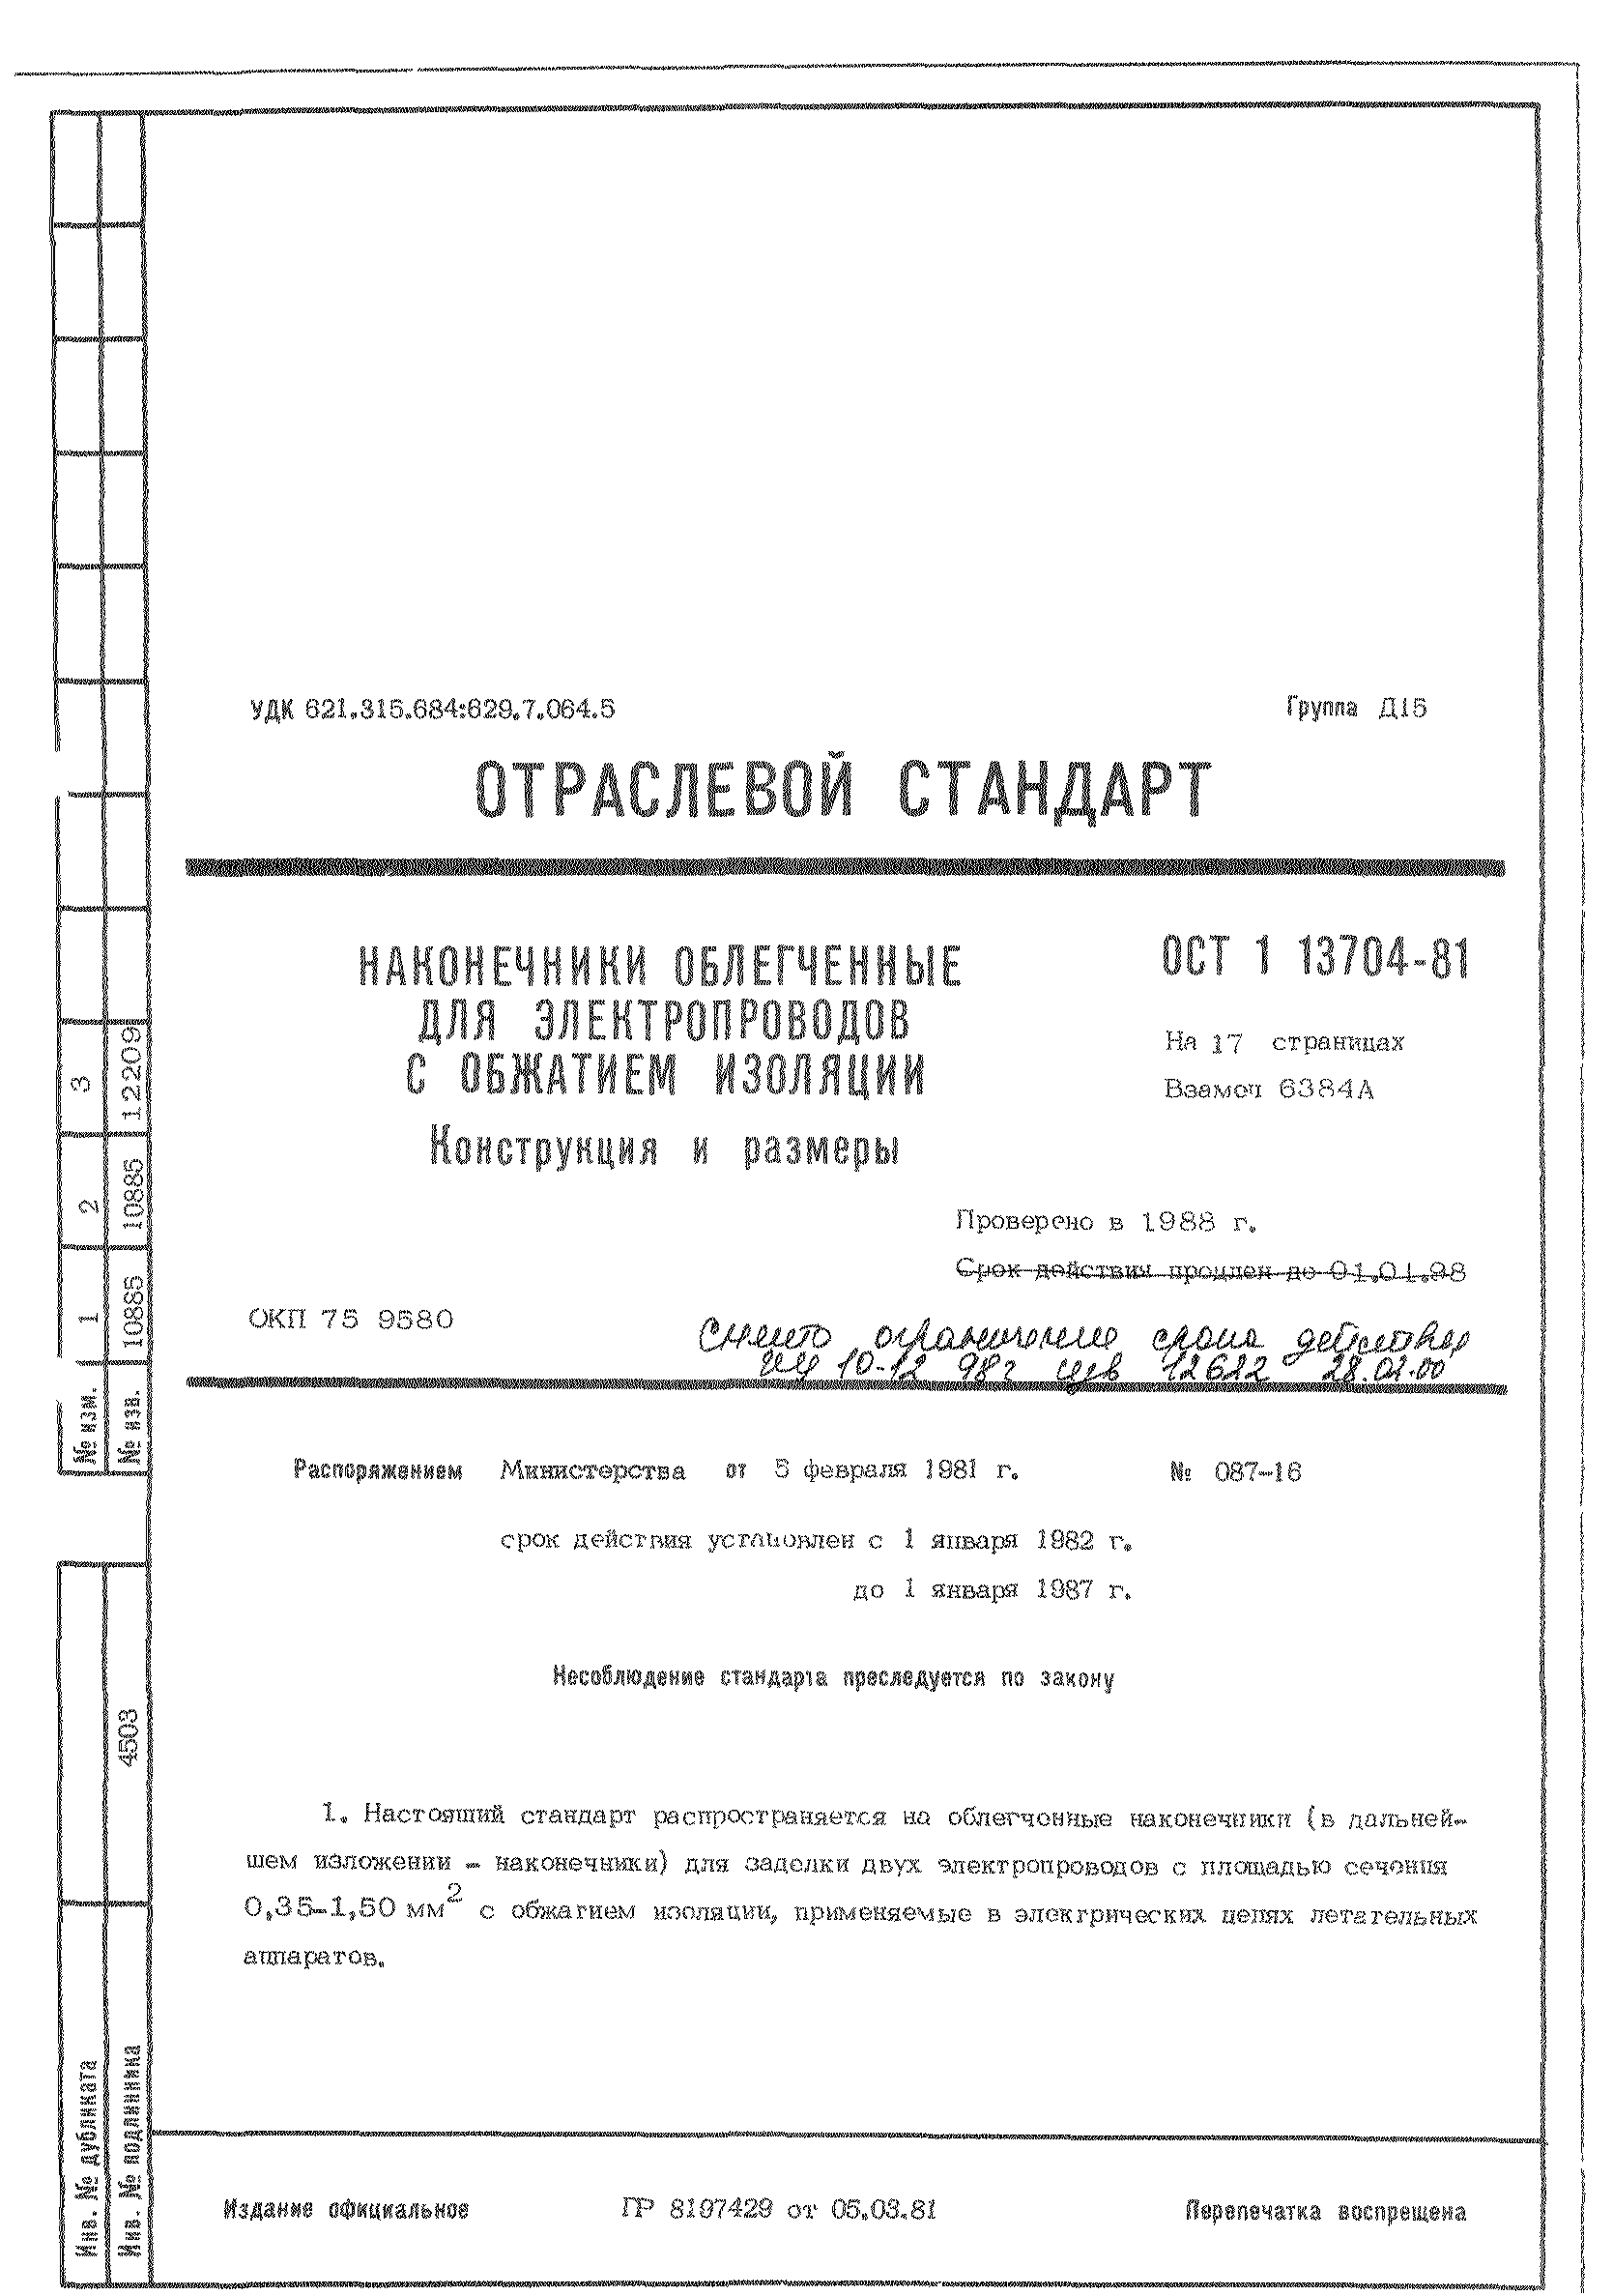 ОСТ 1 13704-81